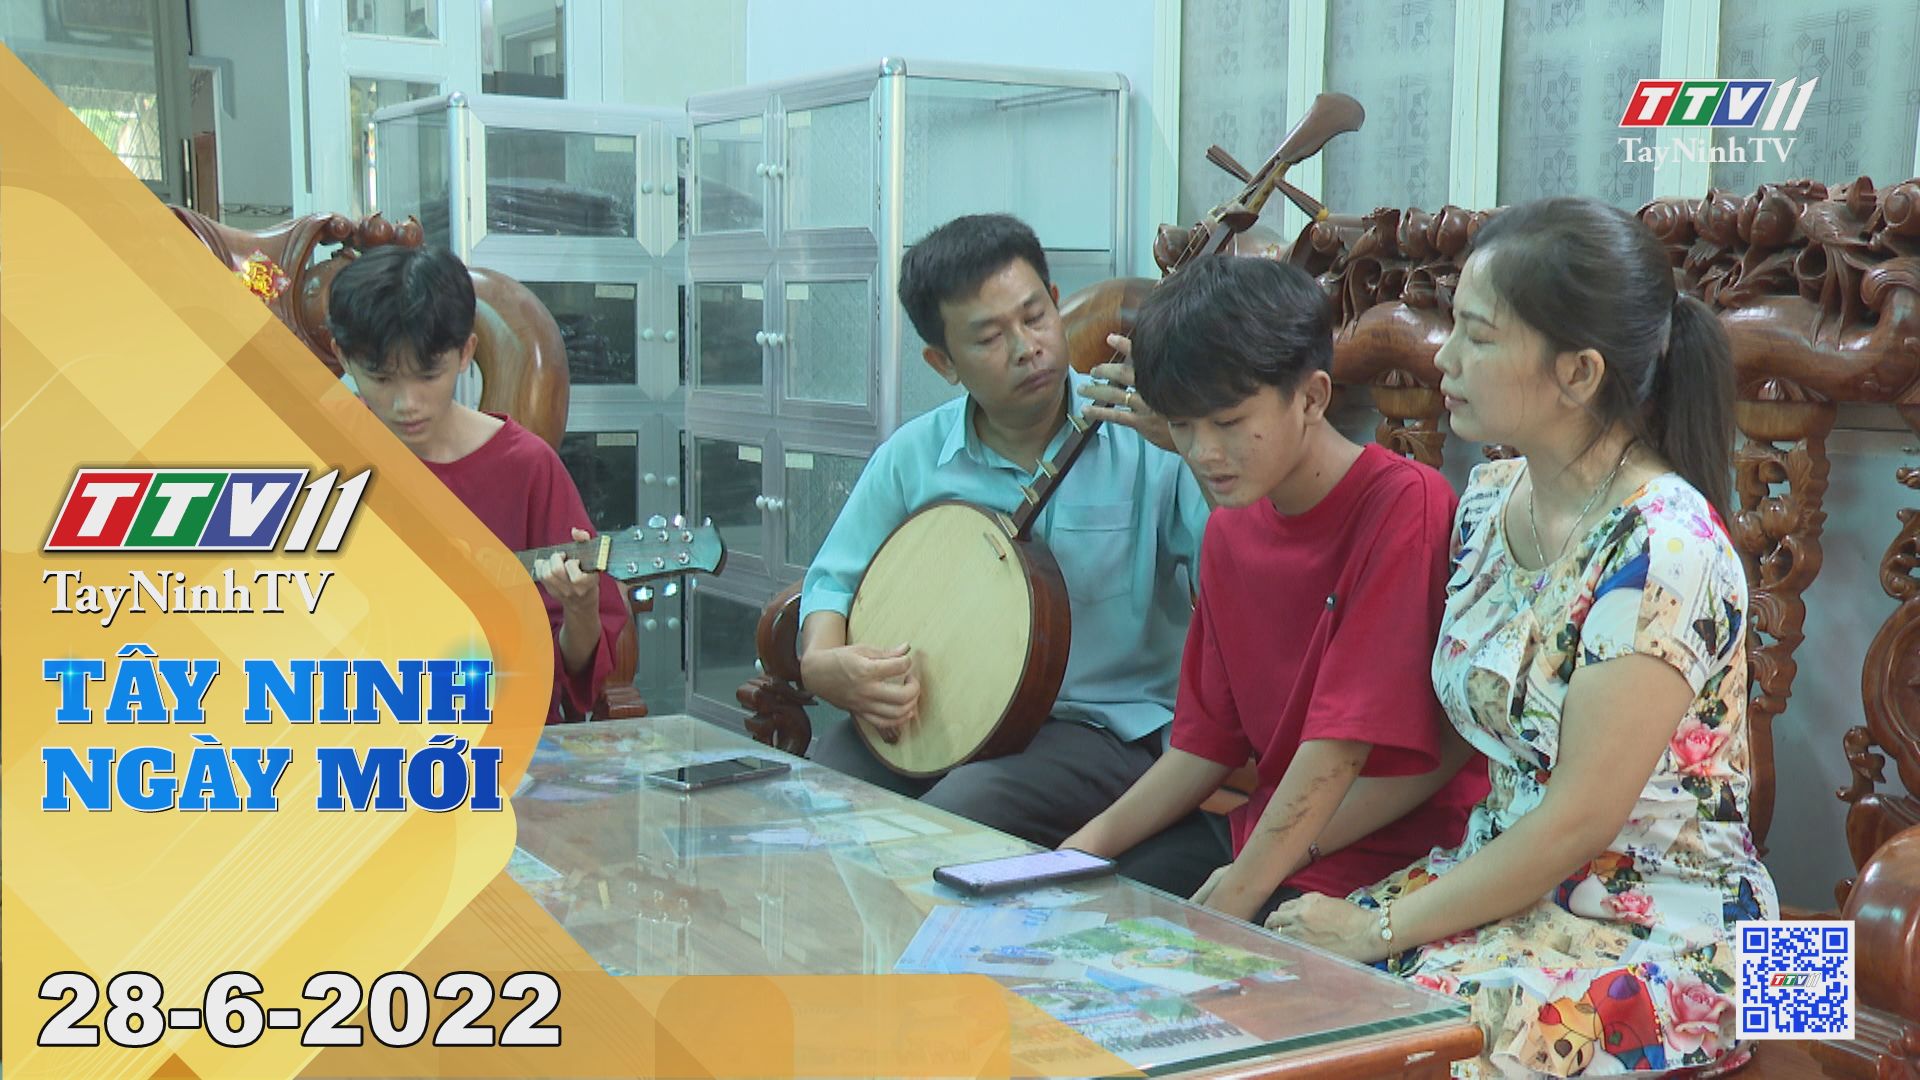 Tây Ninh ngày mới 28-6-2022 | Tin tức hôm nay | TayNinhTV